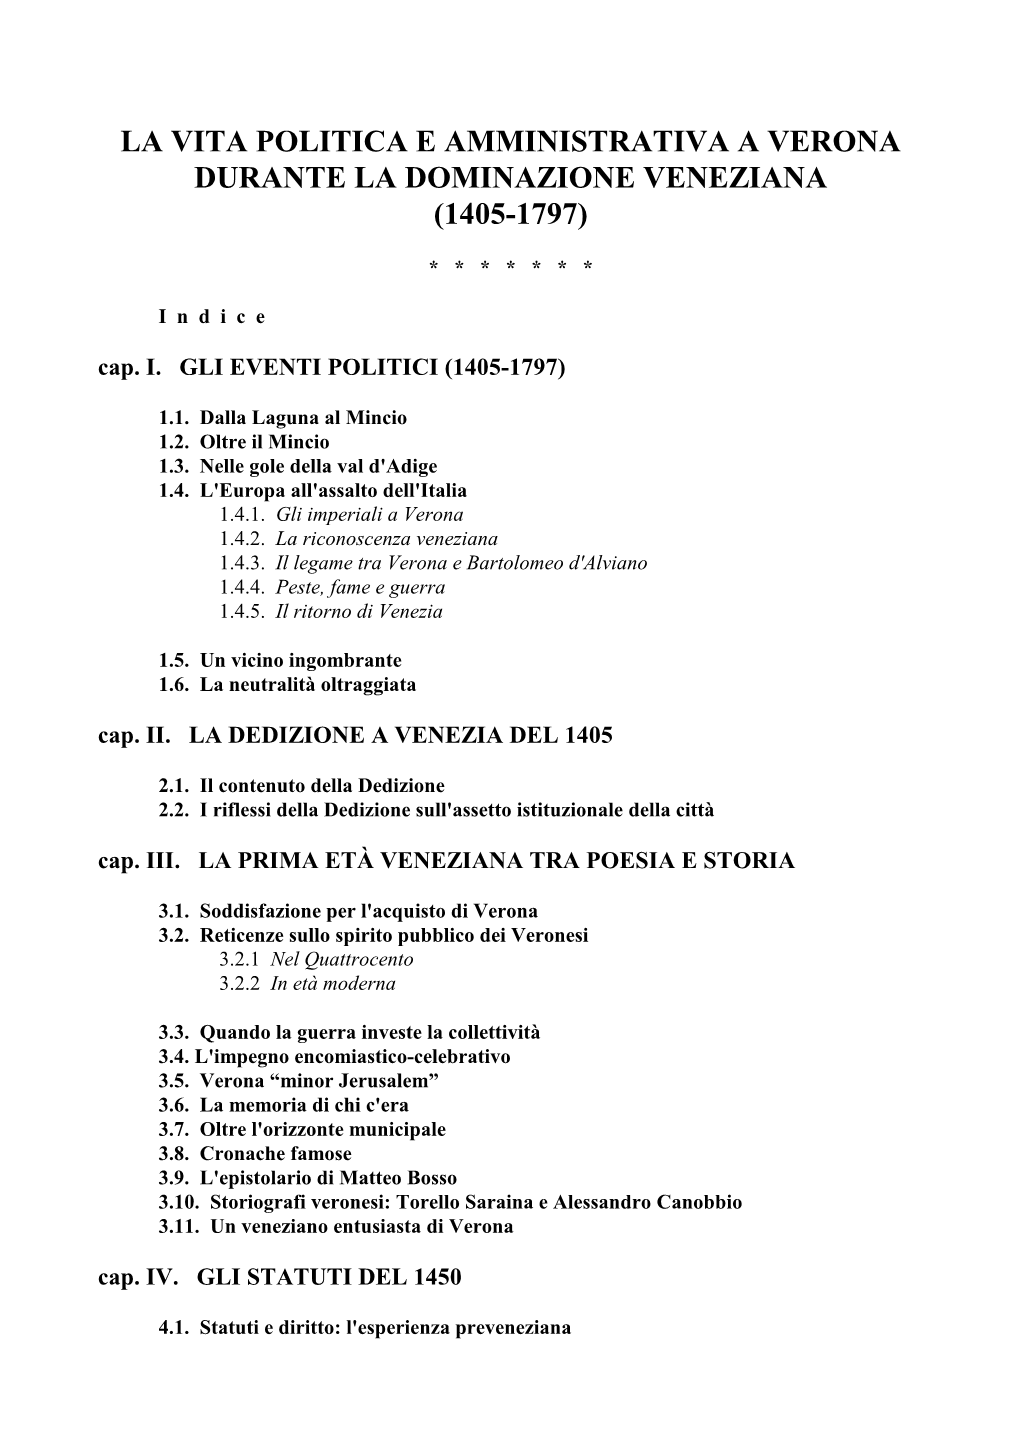 La Vita Politica E Amministrativa a Verona Durante La Dominazione Veneziana (1405-1797)